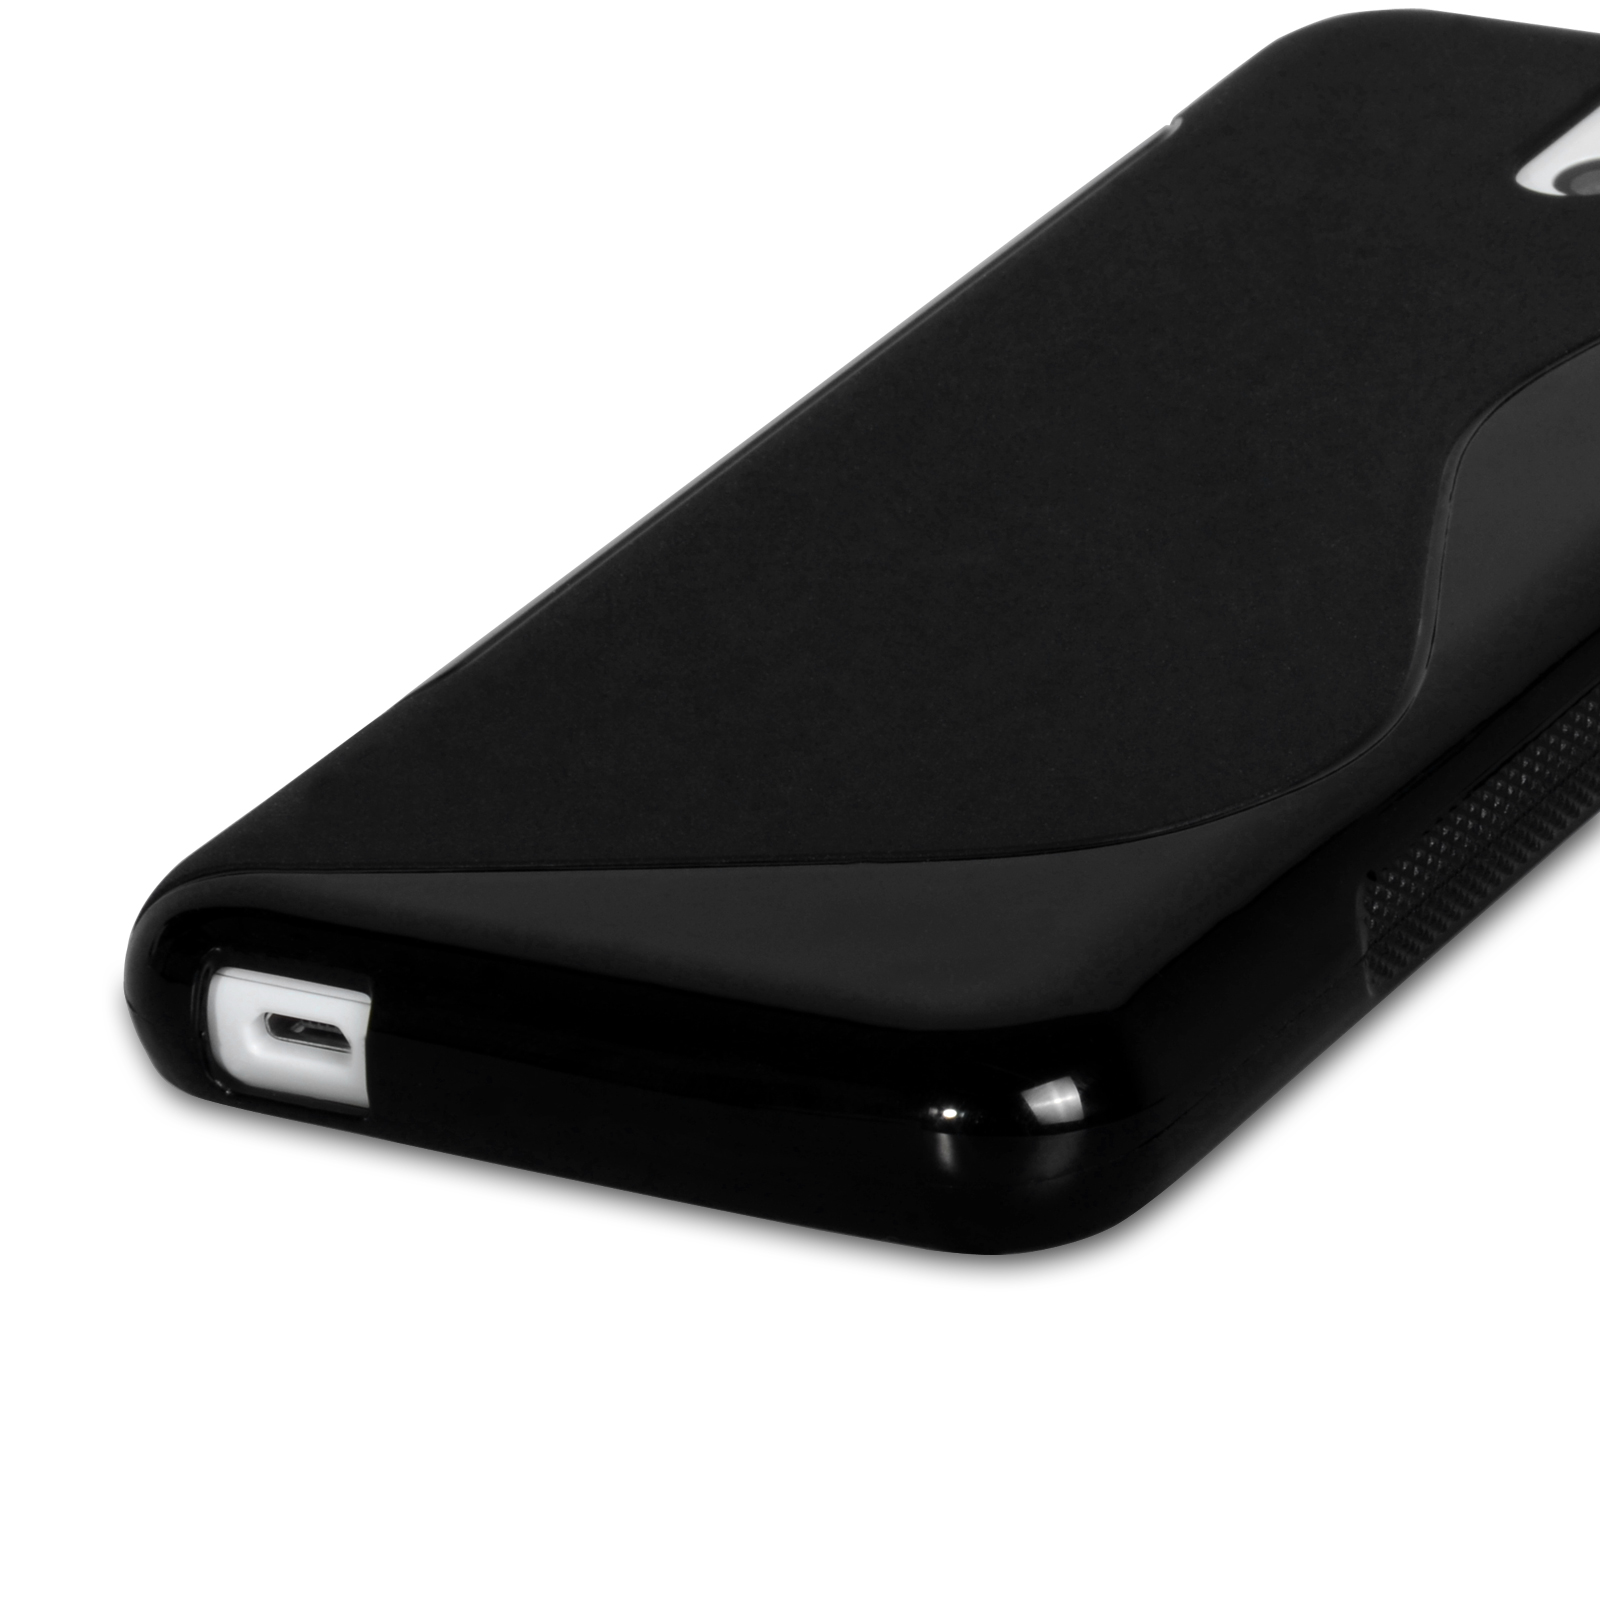 Caseflex HTC Desire 610 Silicone Gel S-Line Case - Black